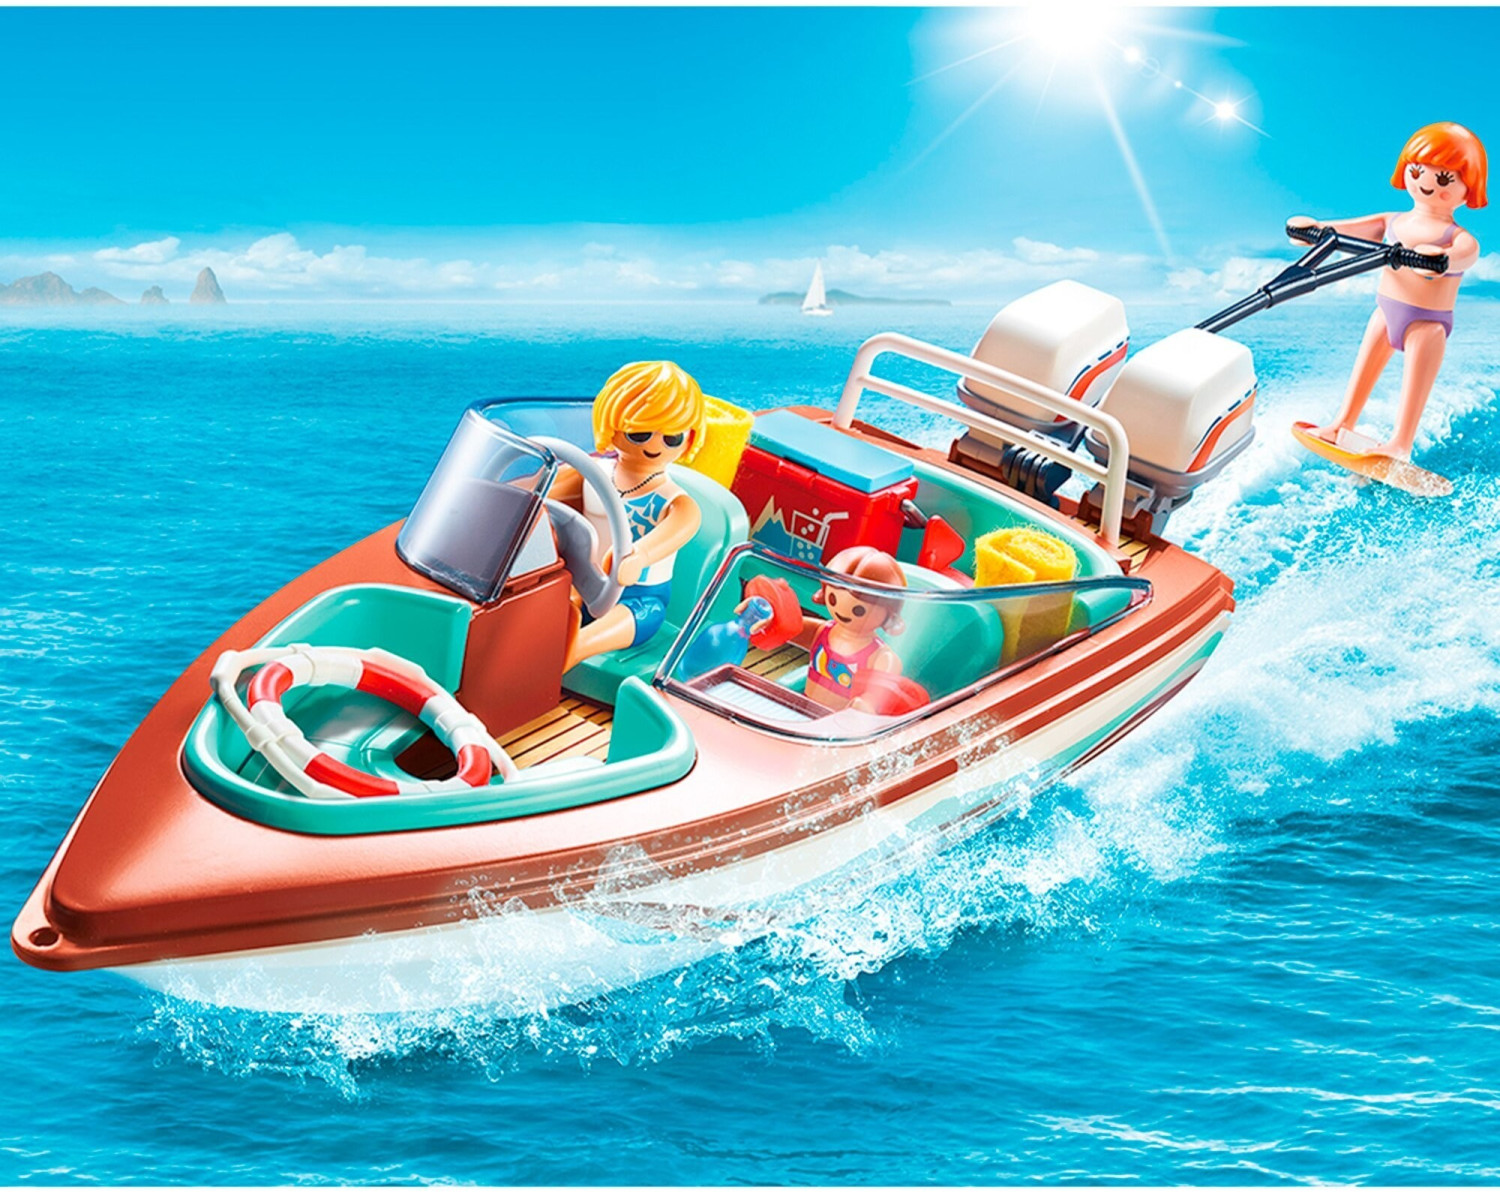 Playmobil Vacanciers avec vedette et moteur submersible (9428) au